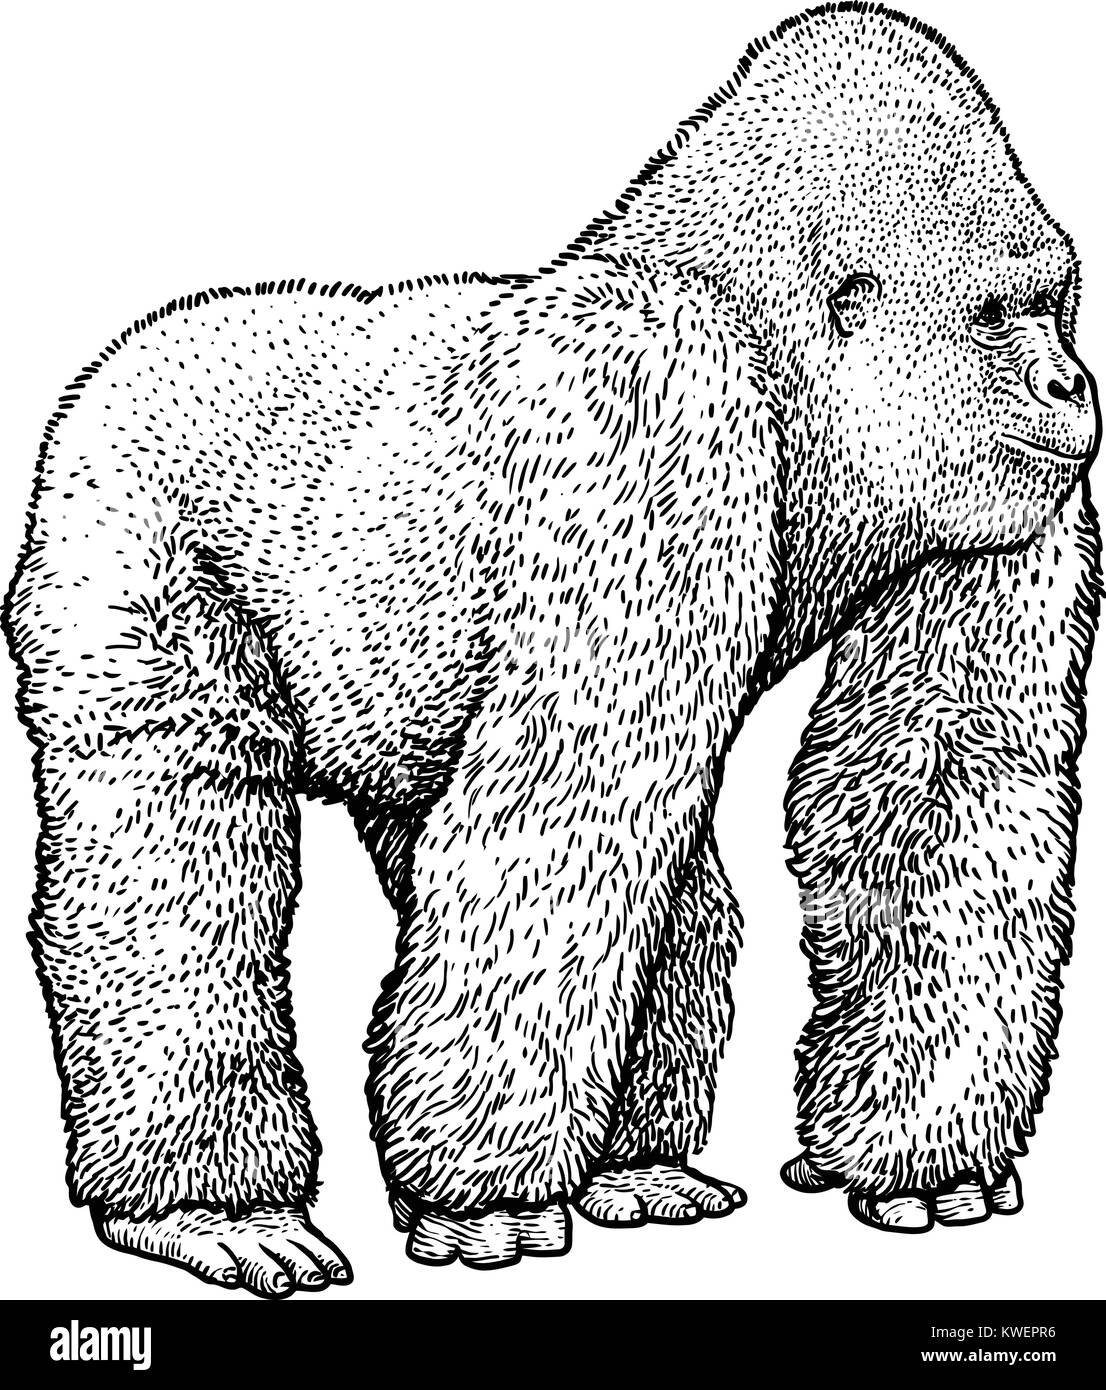 Gorilla illustration, dessin, gravure, encre, dessin au trait, vector Illustration de Vecteur